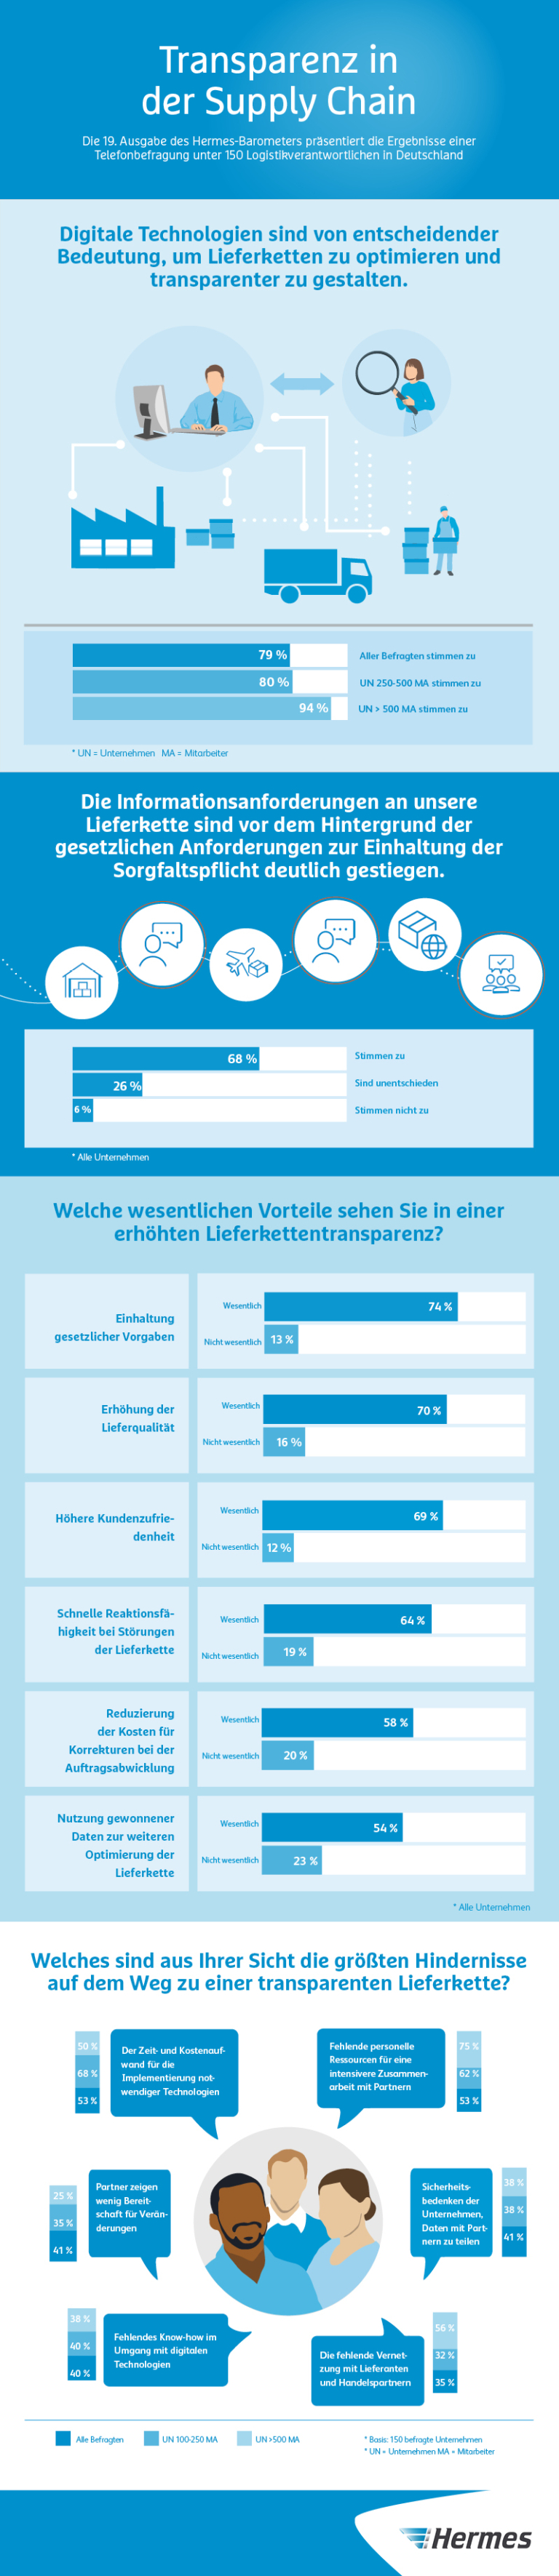 Infografik: 19. Hermes-Barometer, Transparenz in der Supply Chain (JPG)



Umfrage; Barometer; SCS